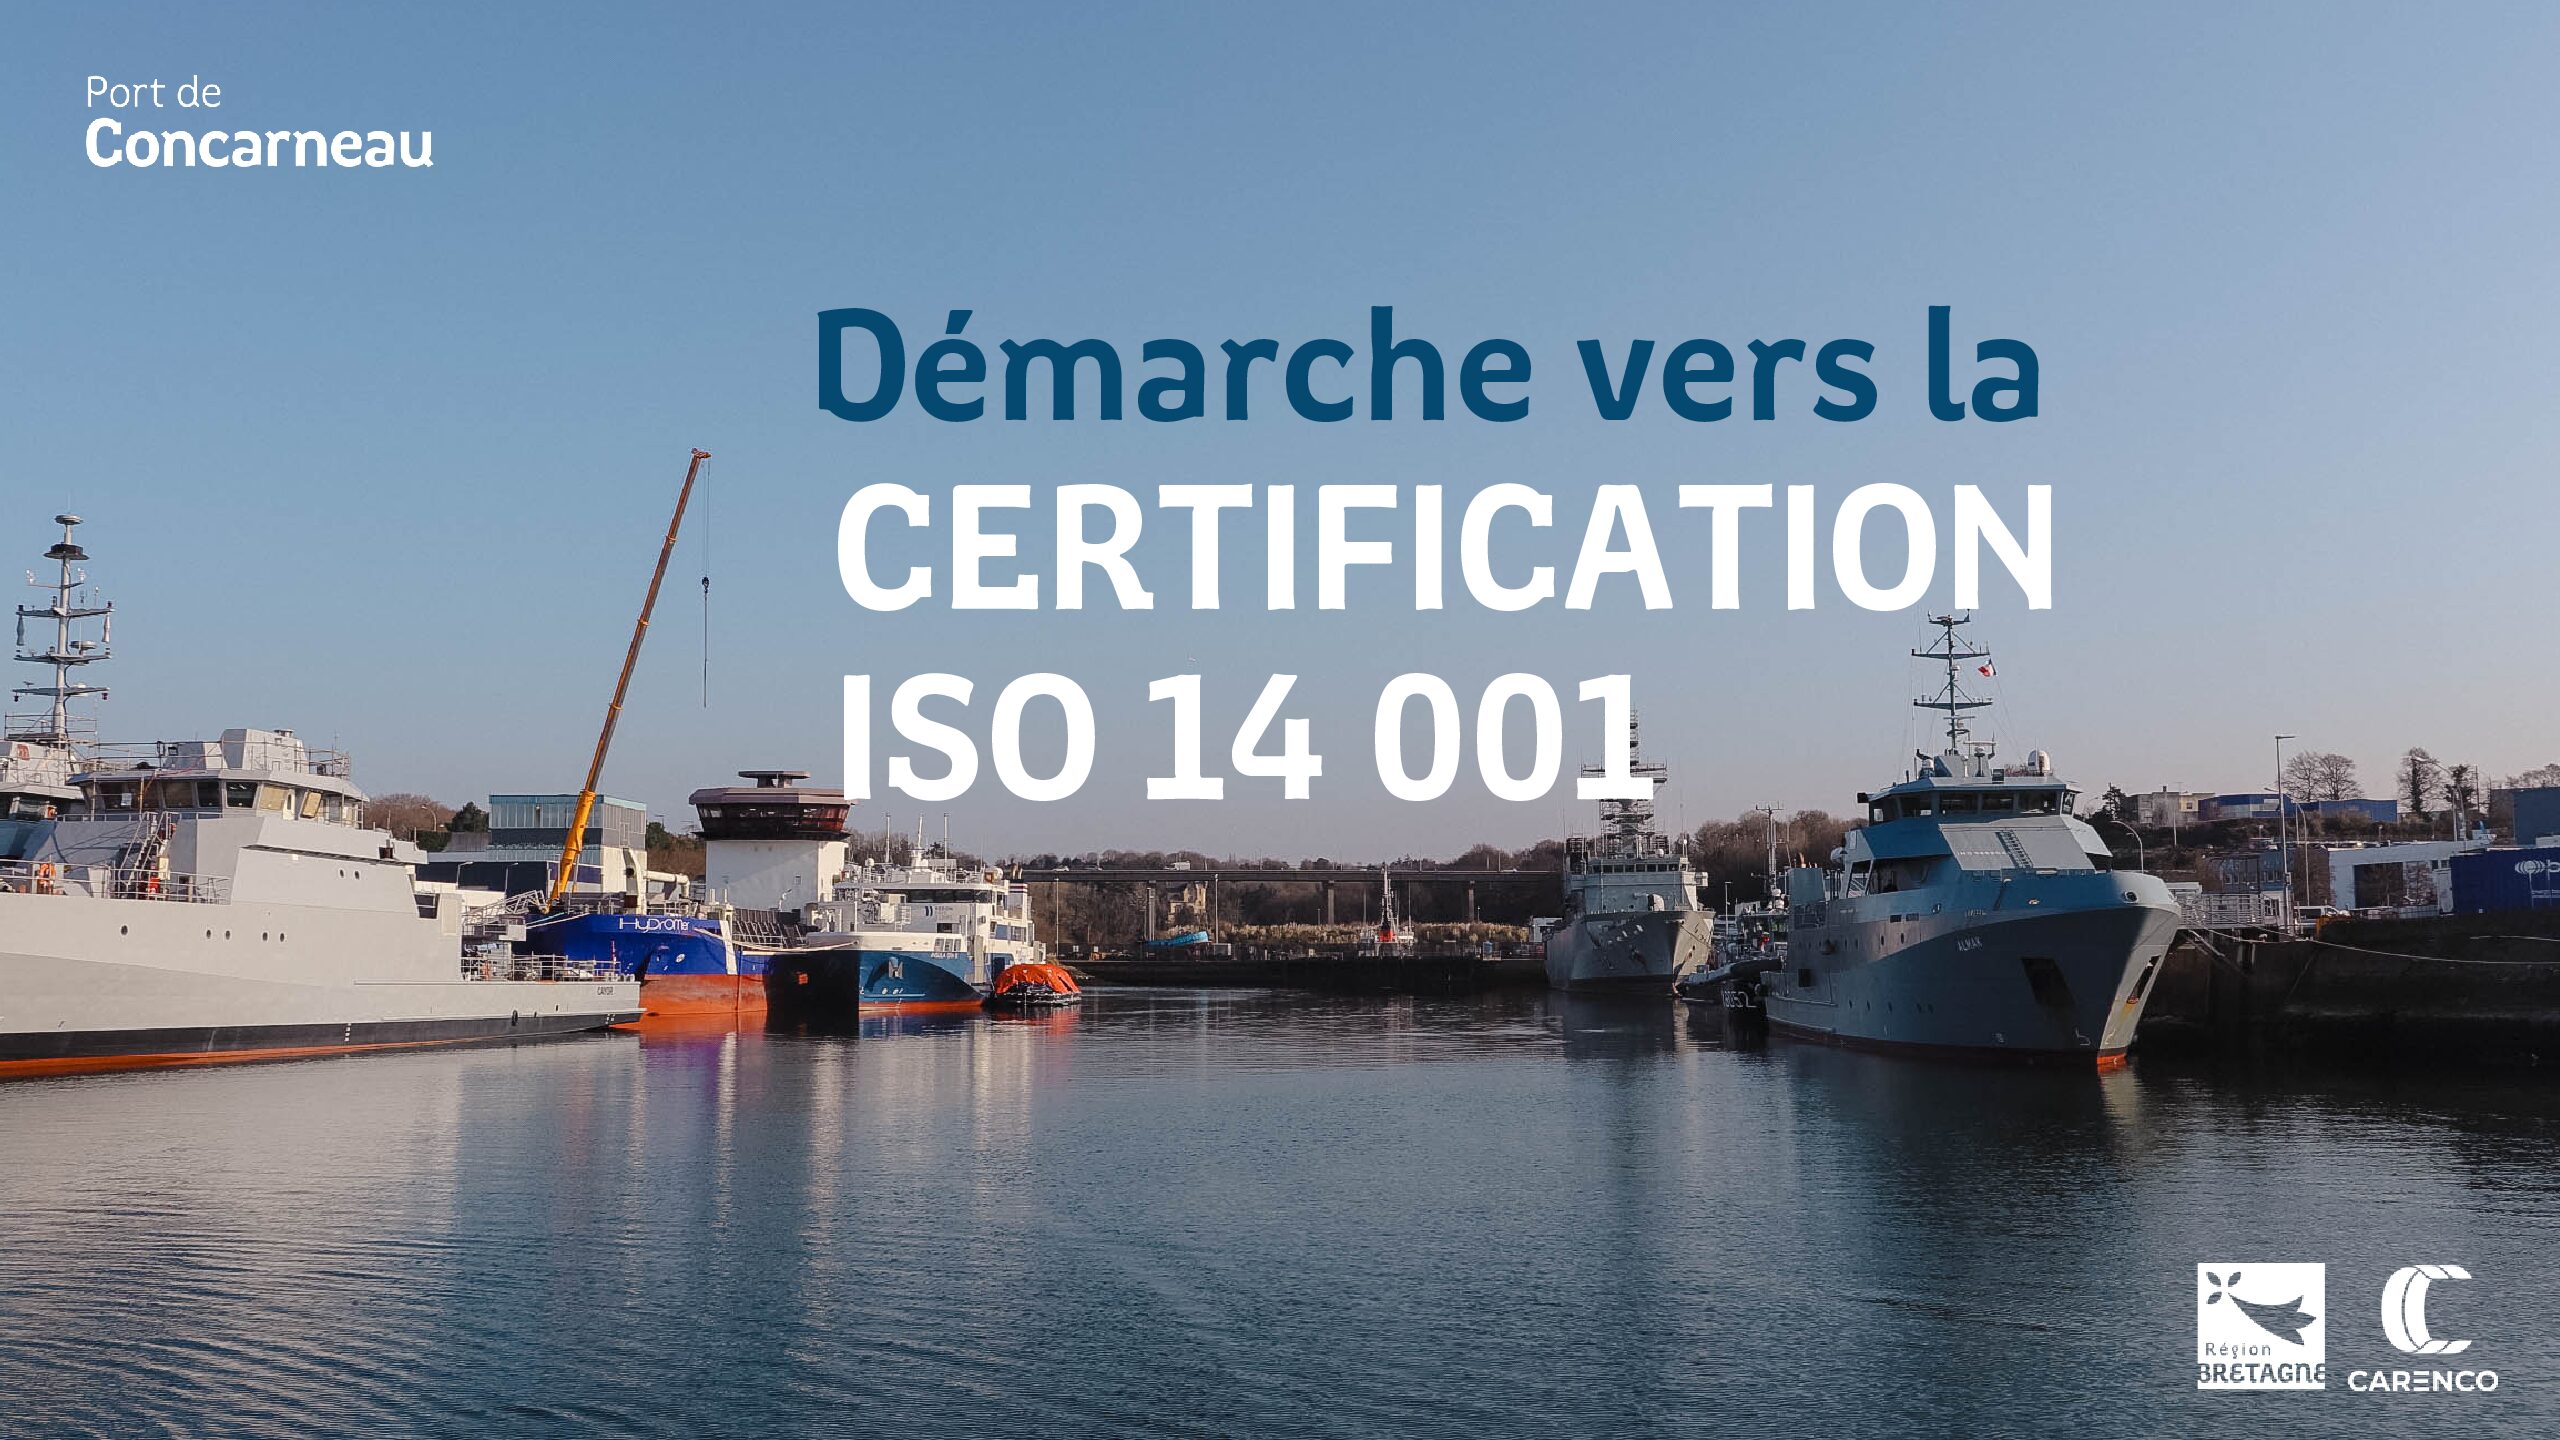 La démarche du Port de Concarneau, CRN vers la Certification ISO 14 001